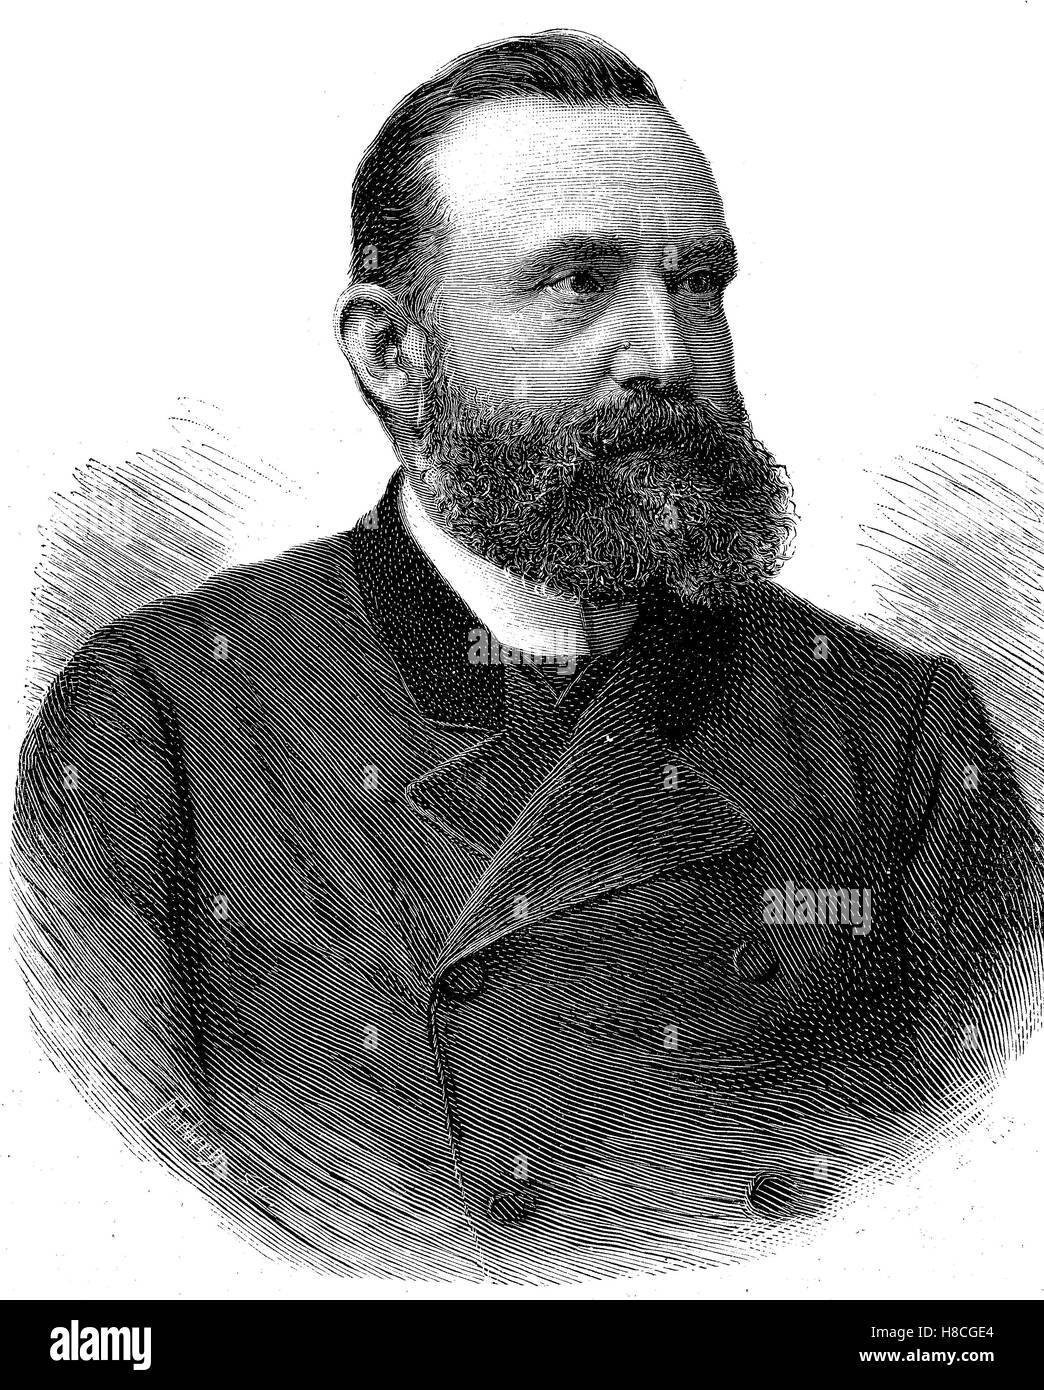 Walter Hauser, le 1 mai 1837, Français - Octobre 22, 1902, est une personnalité politique suisse, membre du Conseil Fédéral Suisse , gravure sur bois de 1892 Banque D'Images